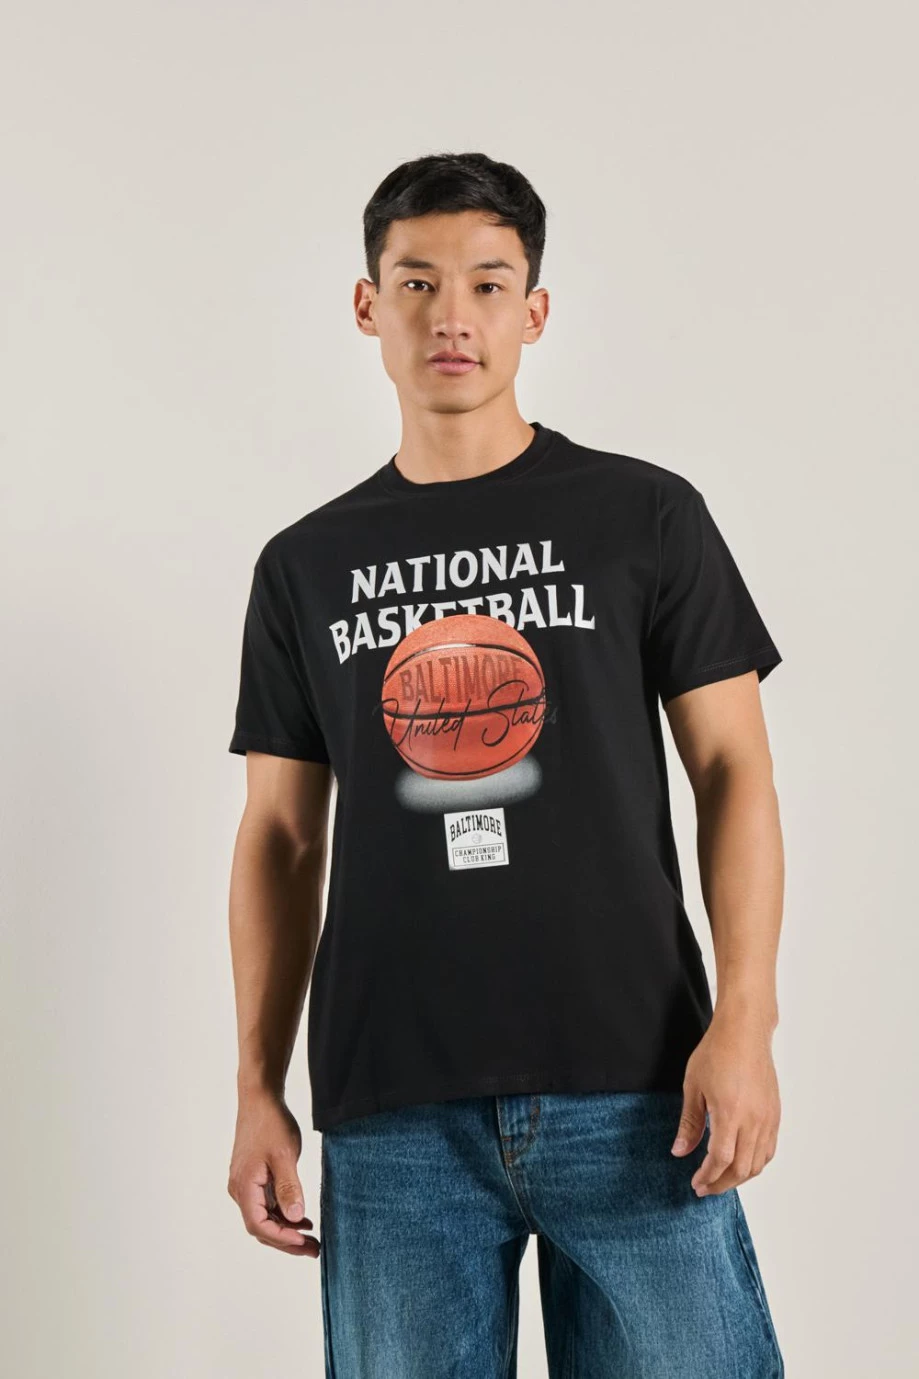 Camiseta cuello redondo unicolor con arte college deportivo